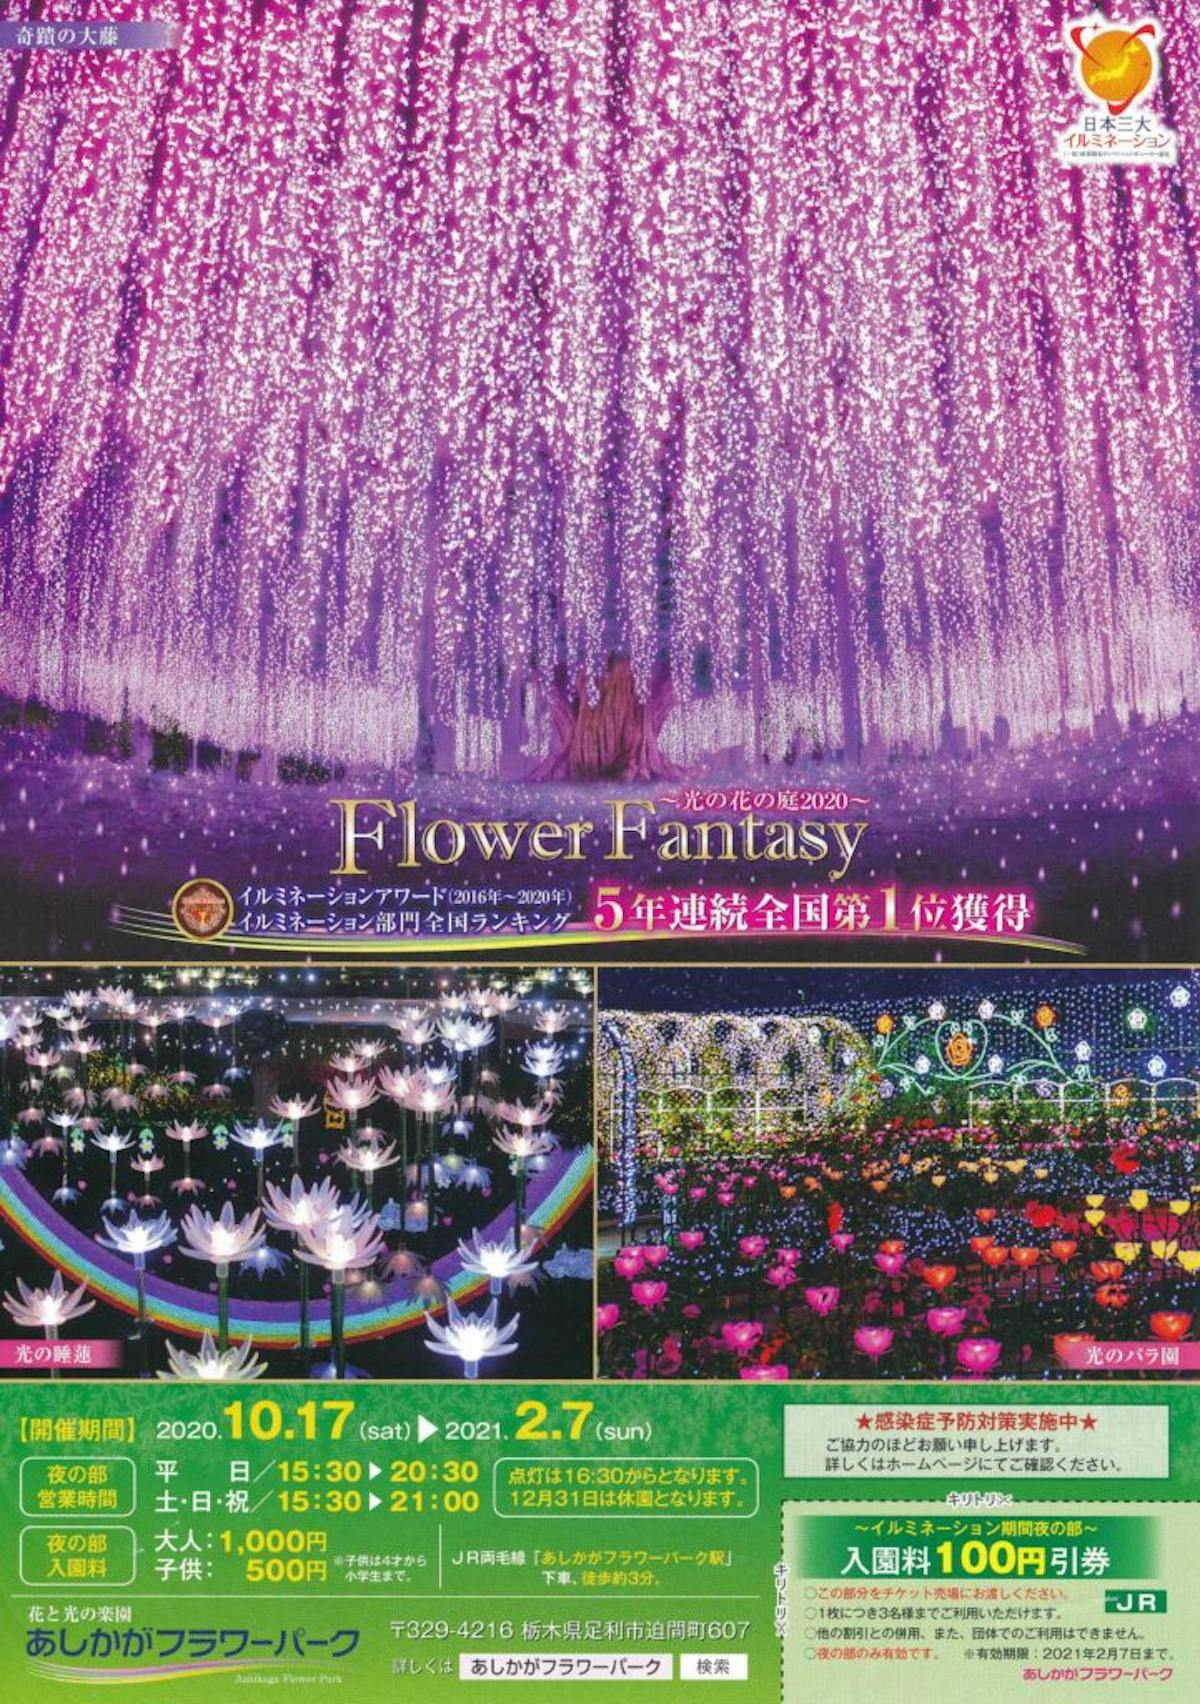 あしかがフラワーパーク光の花の庭 日本三大イルミネーションの光の演出 オマツリジャパン あなたと祭りをつなげるメディア